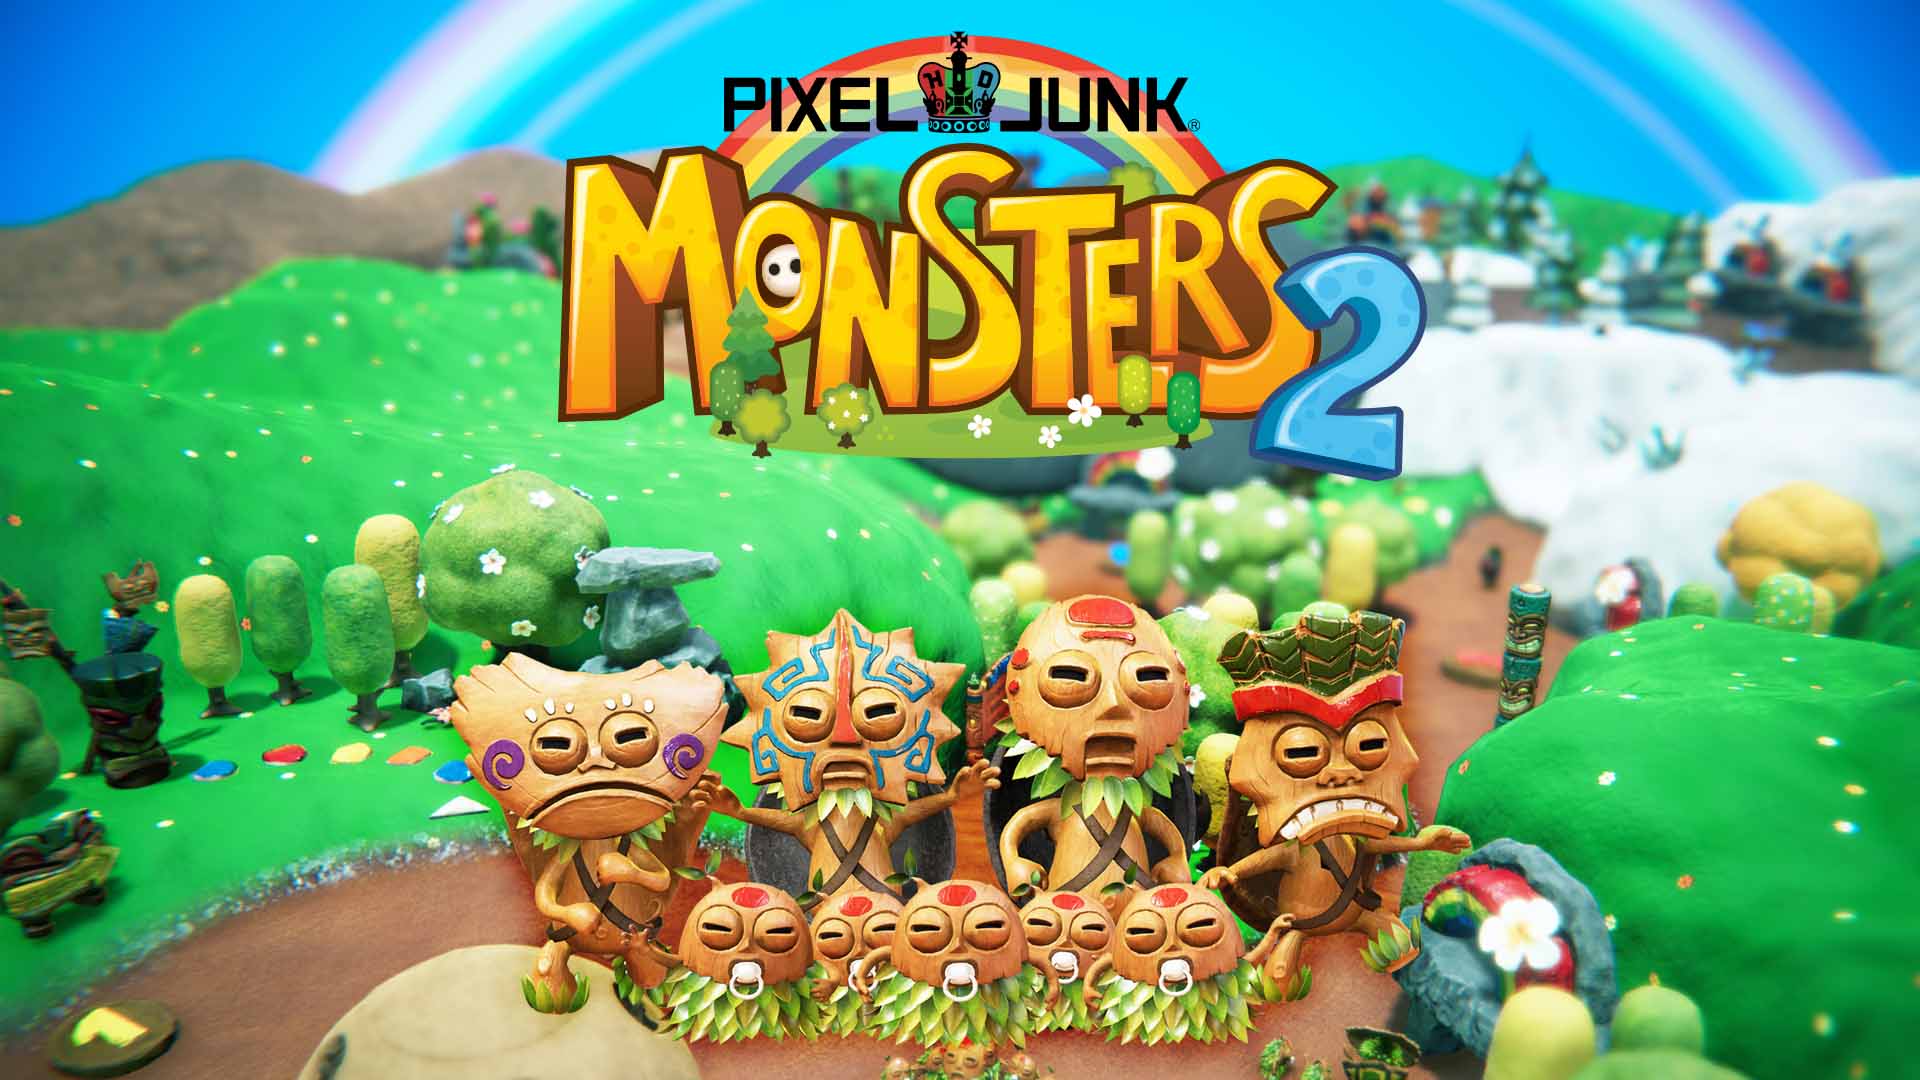 Pixeljunk Monsters 2